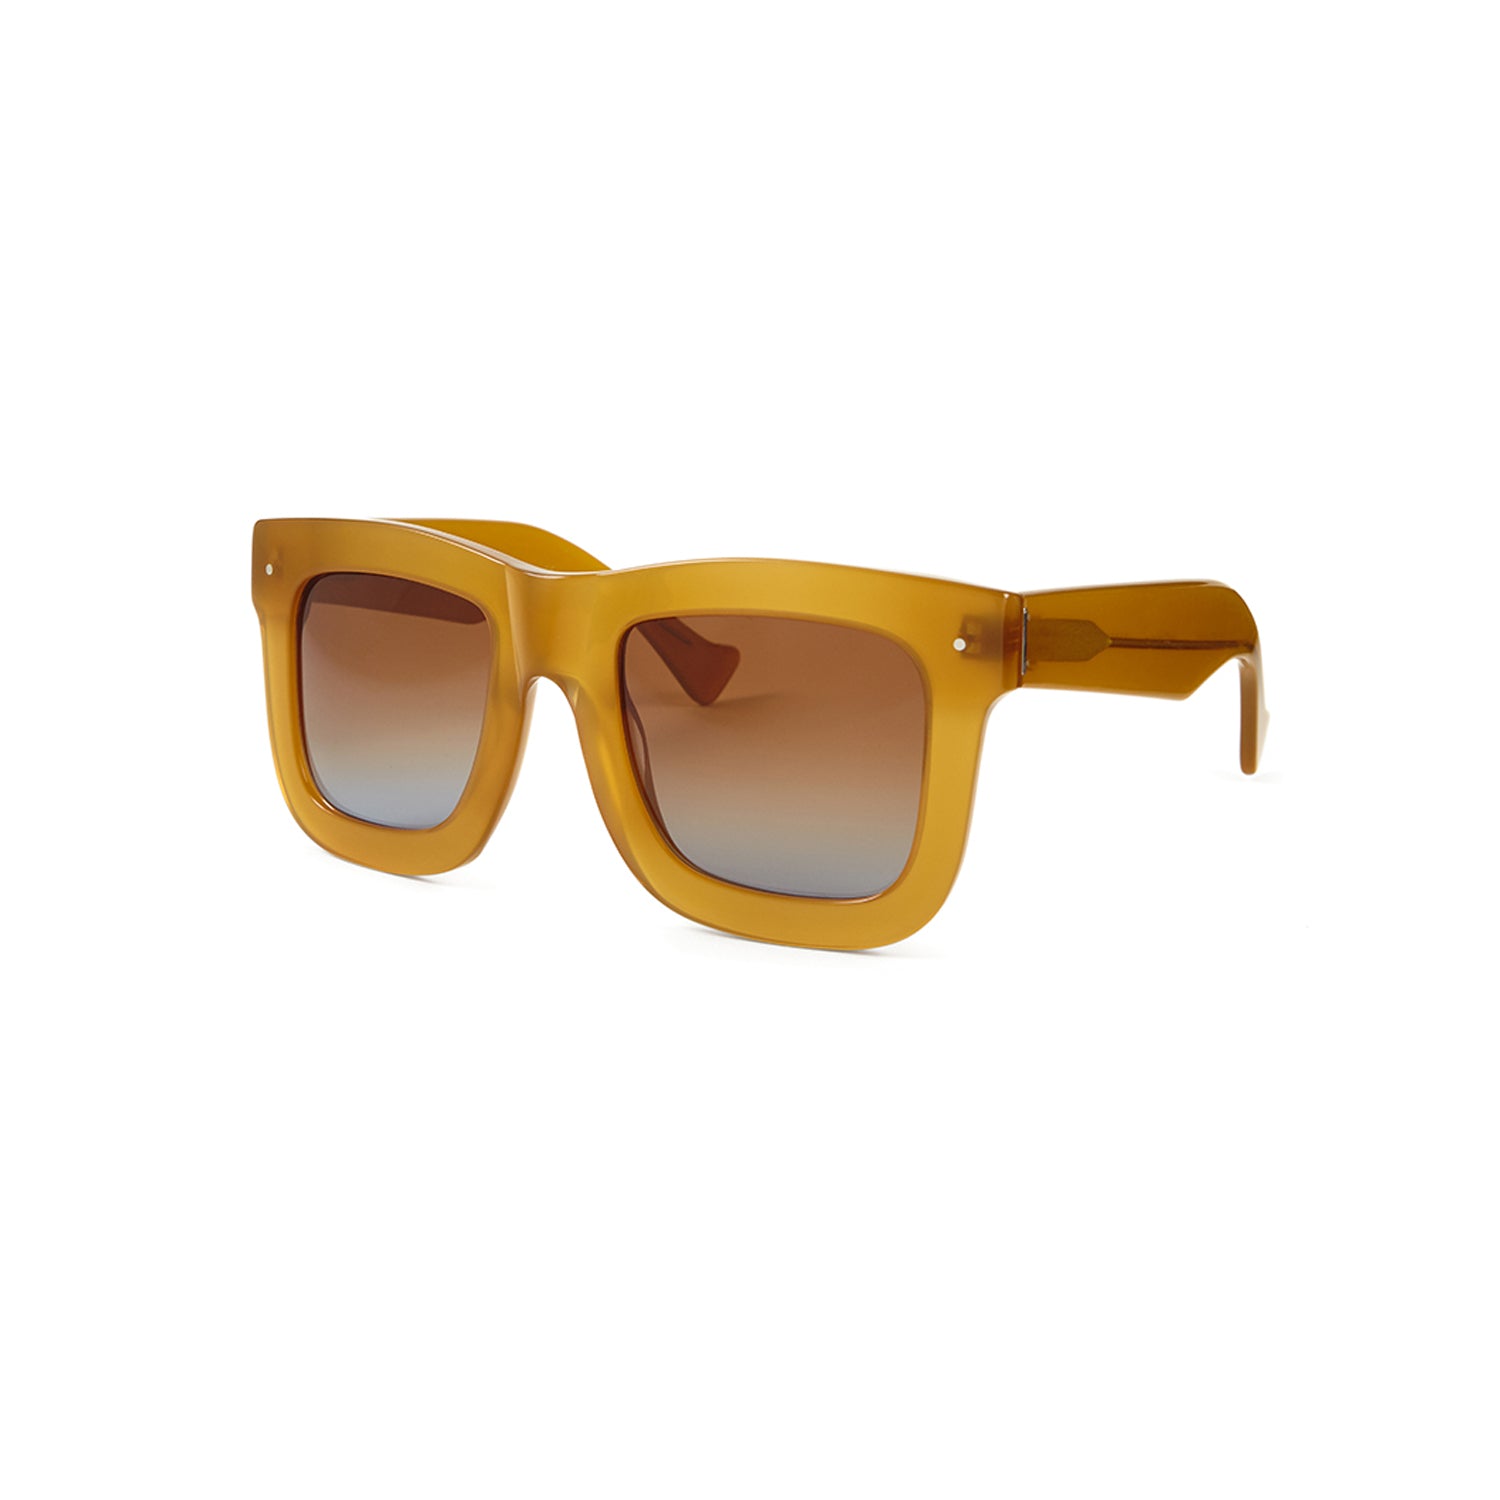 Grey Ant Sunglasses Status | Translucent / Gold